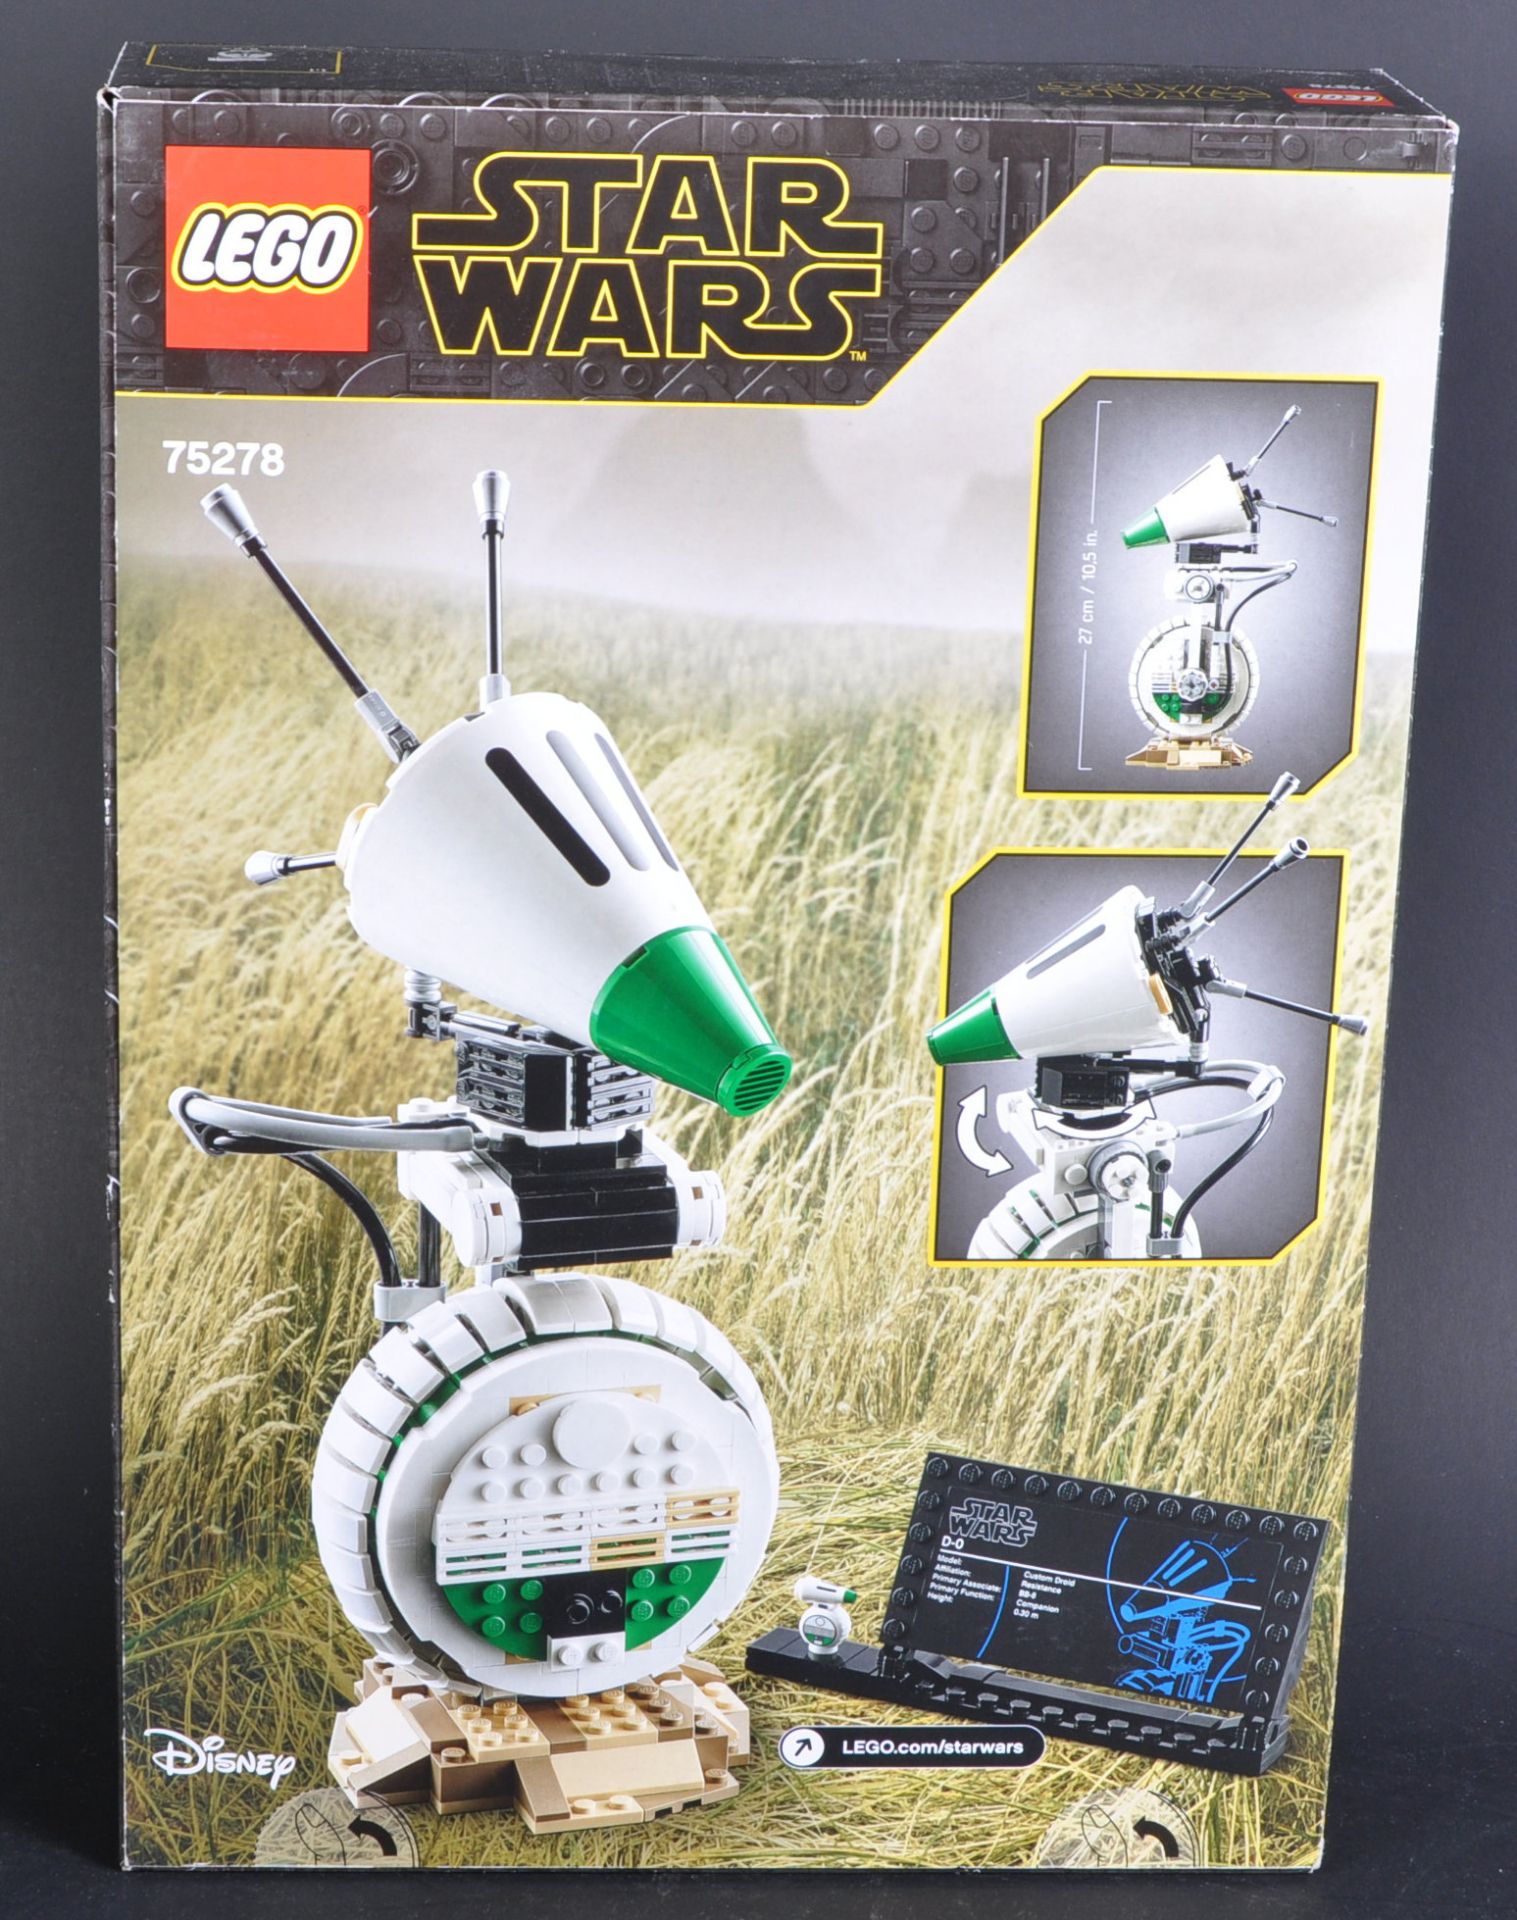 LEGO SET - STAR WARS - 75278 - D-O - Image 2 of 3